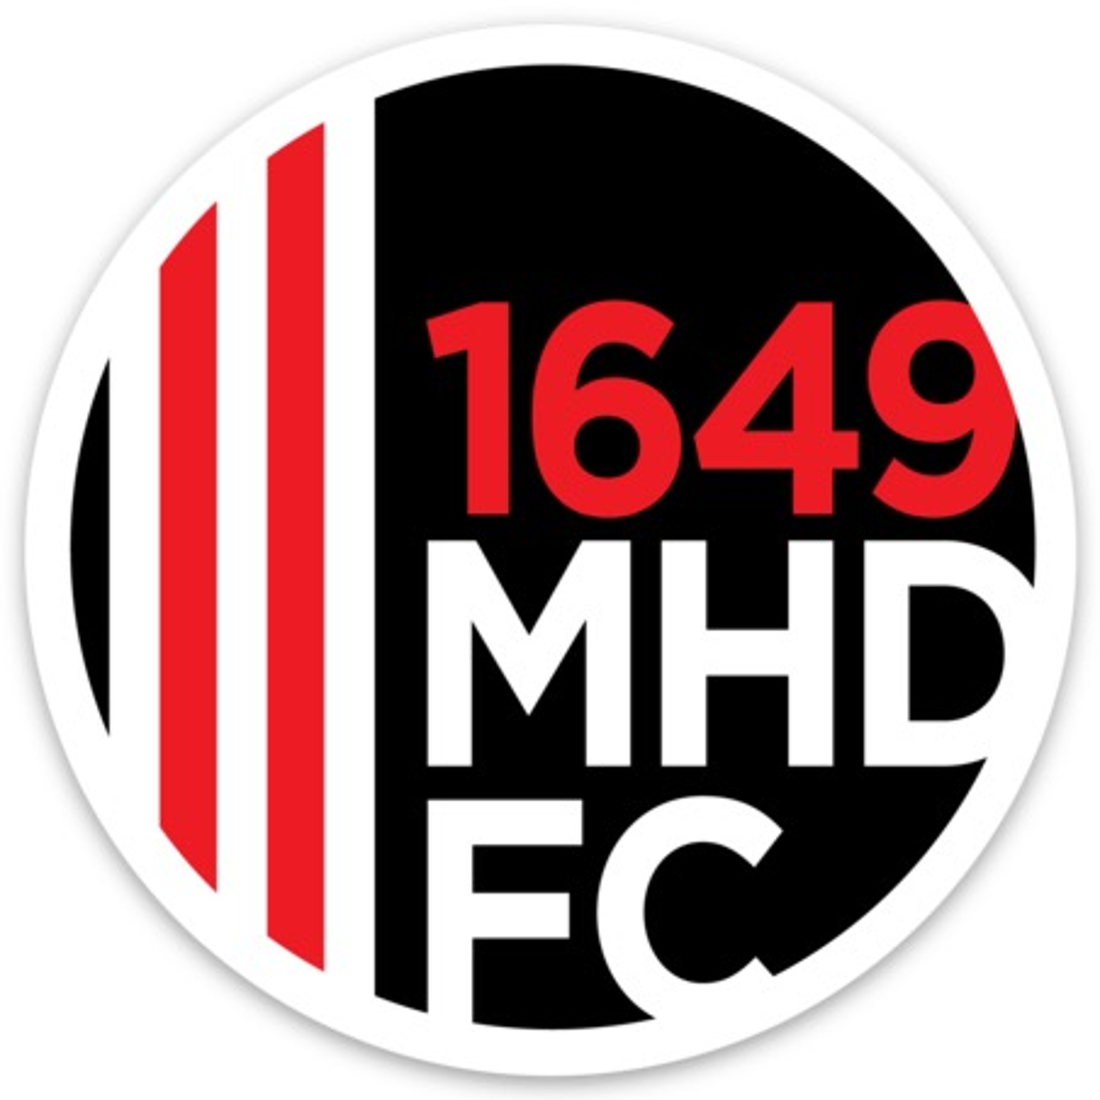 MHDFC 1649 Sticker